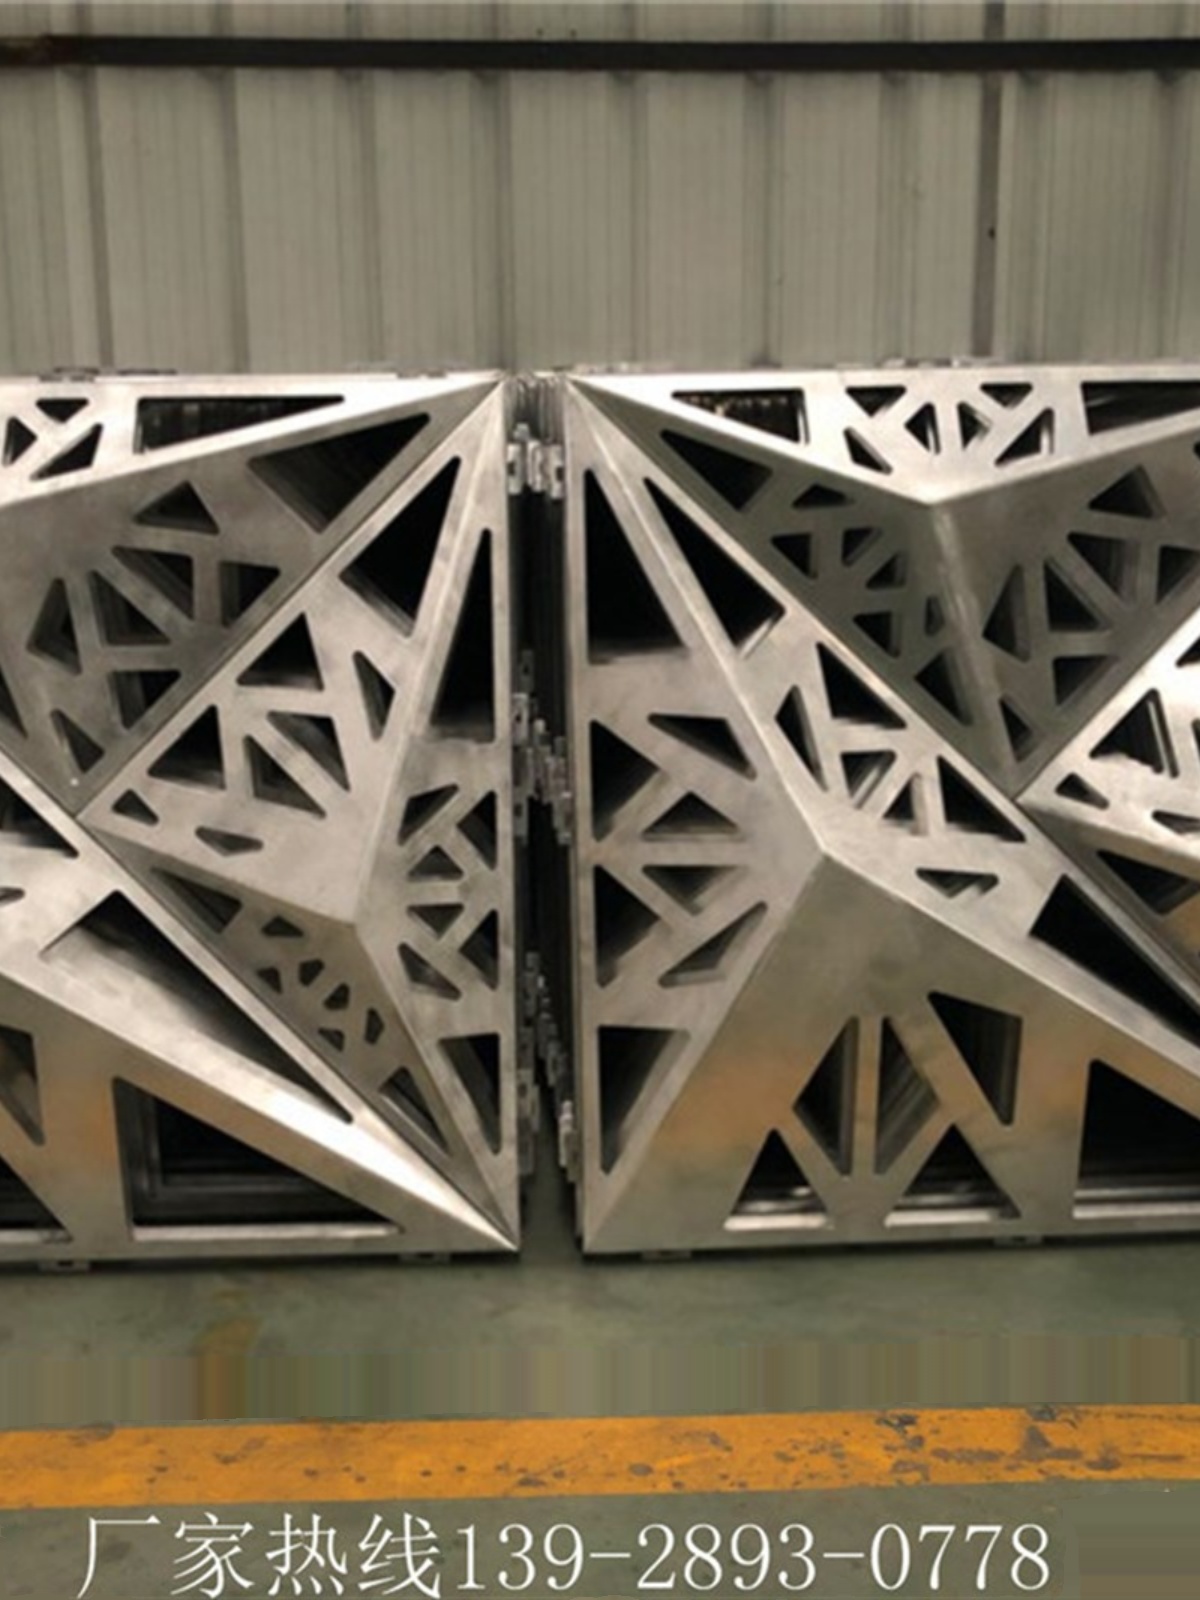 新氟碳漆铝单板木纹铝板定做外墙铝合金单板冲孔铝板Z造型铝单促